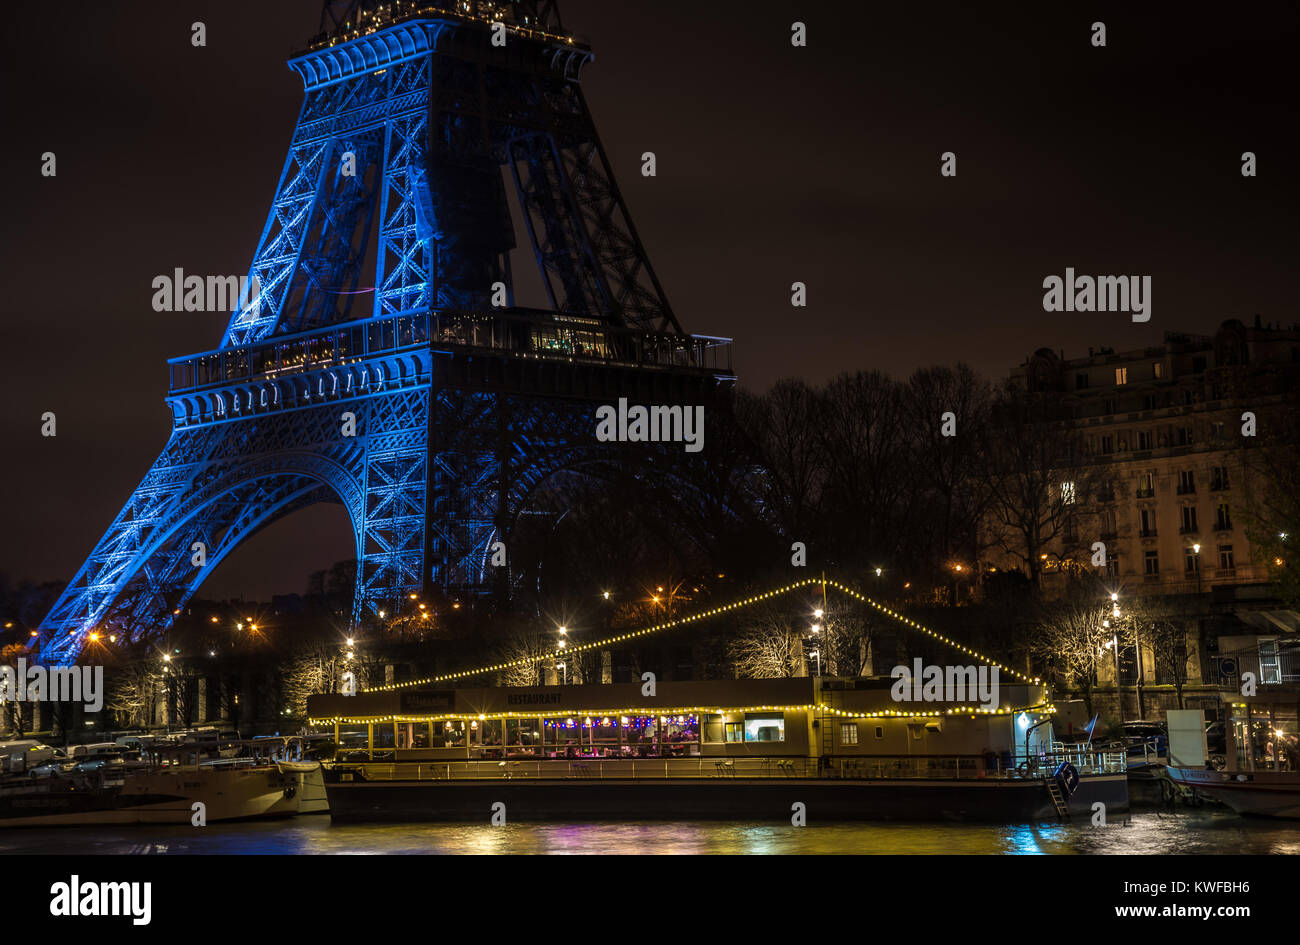 Bateau-mouche sur la Seine, vue de la tour Eiffel de nuit dans la belle ville de Paris. Cette nuit la tour Eiffel commémorait le décès de Johnny. Stock Photo